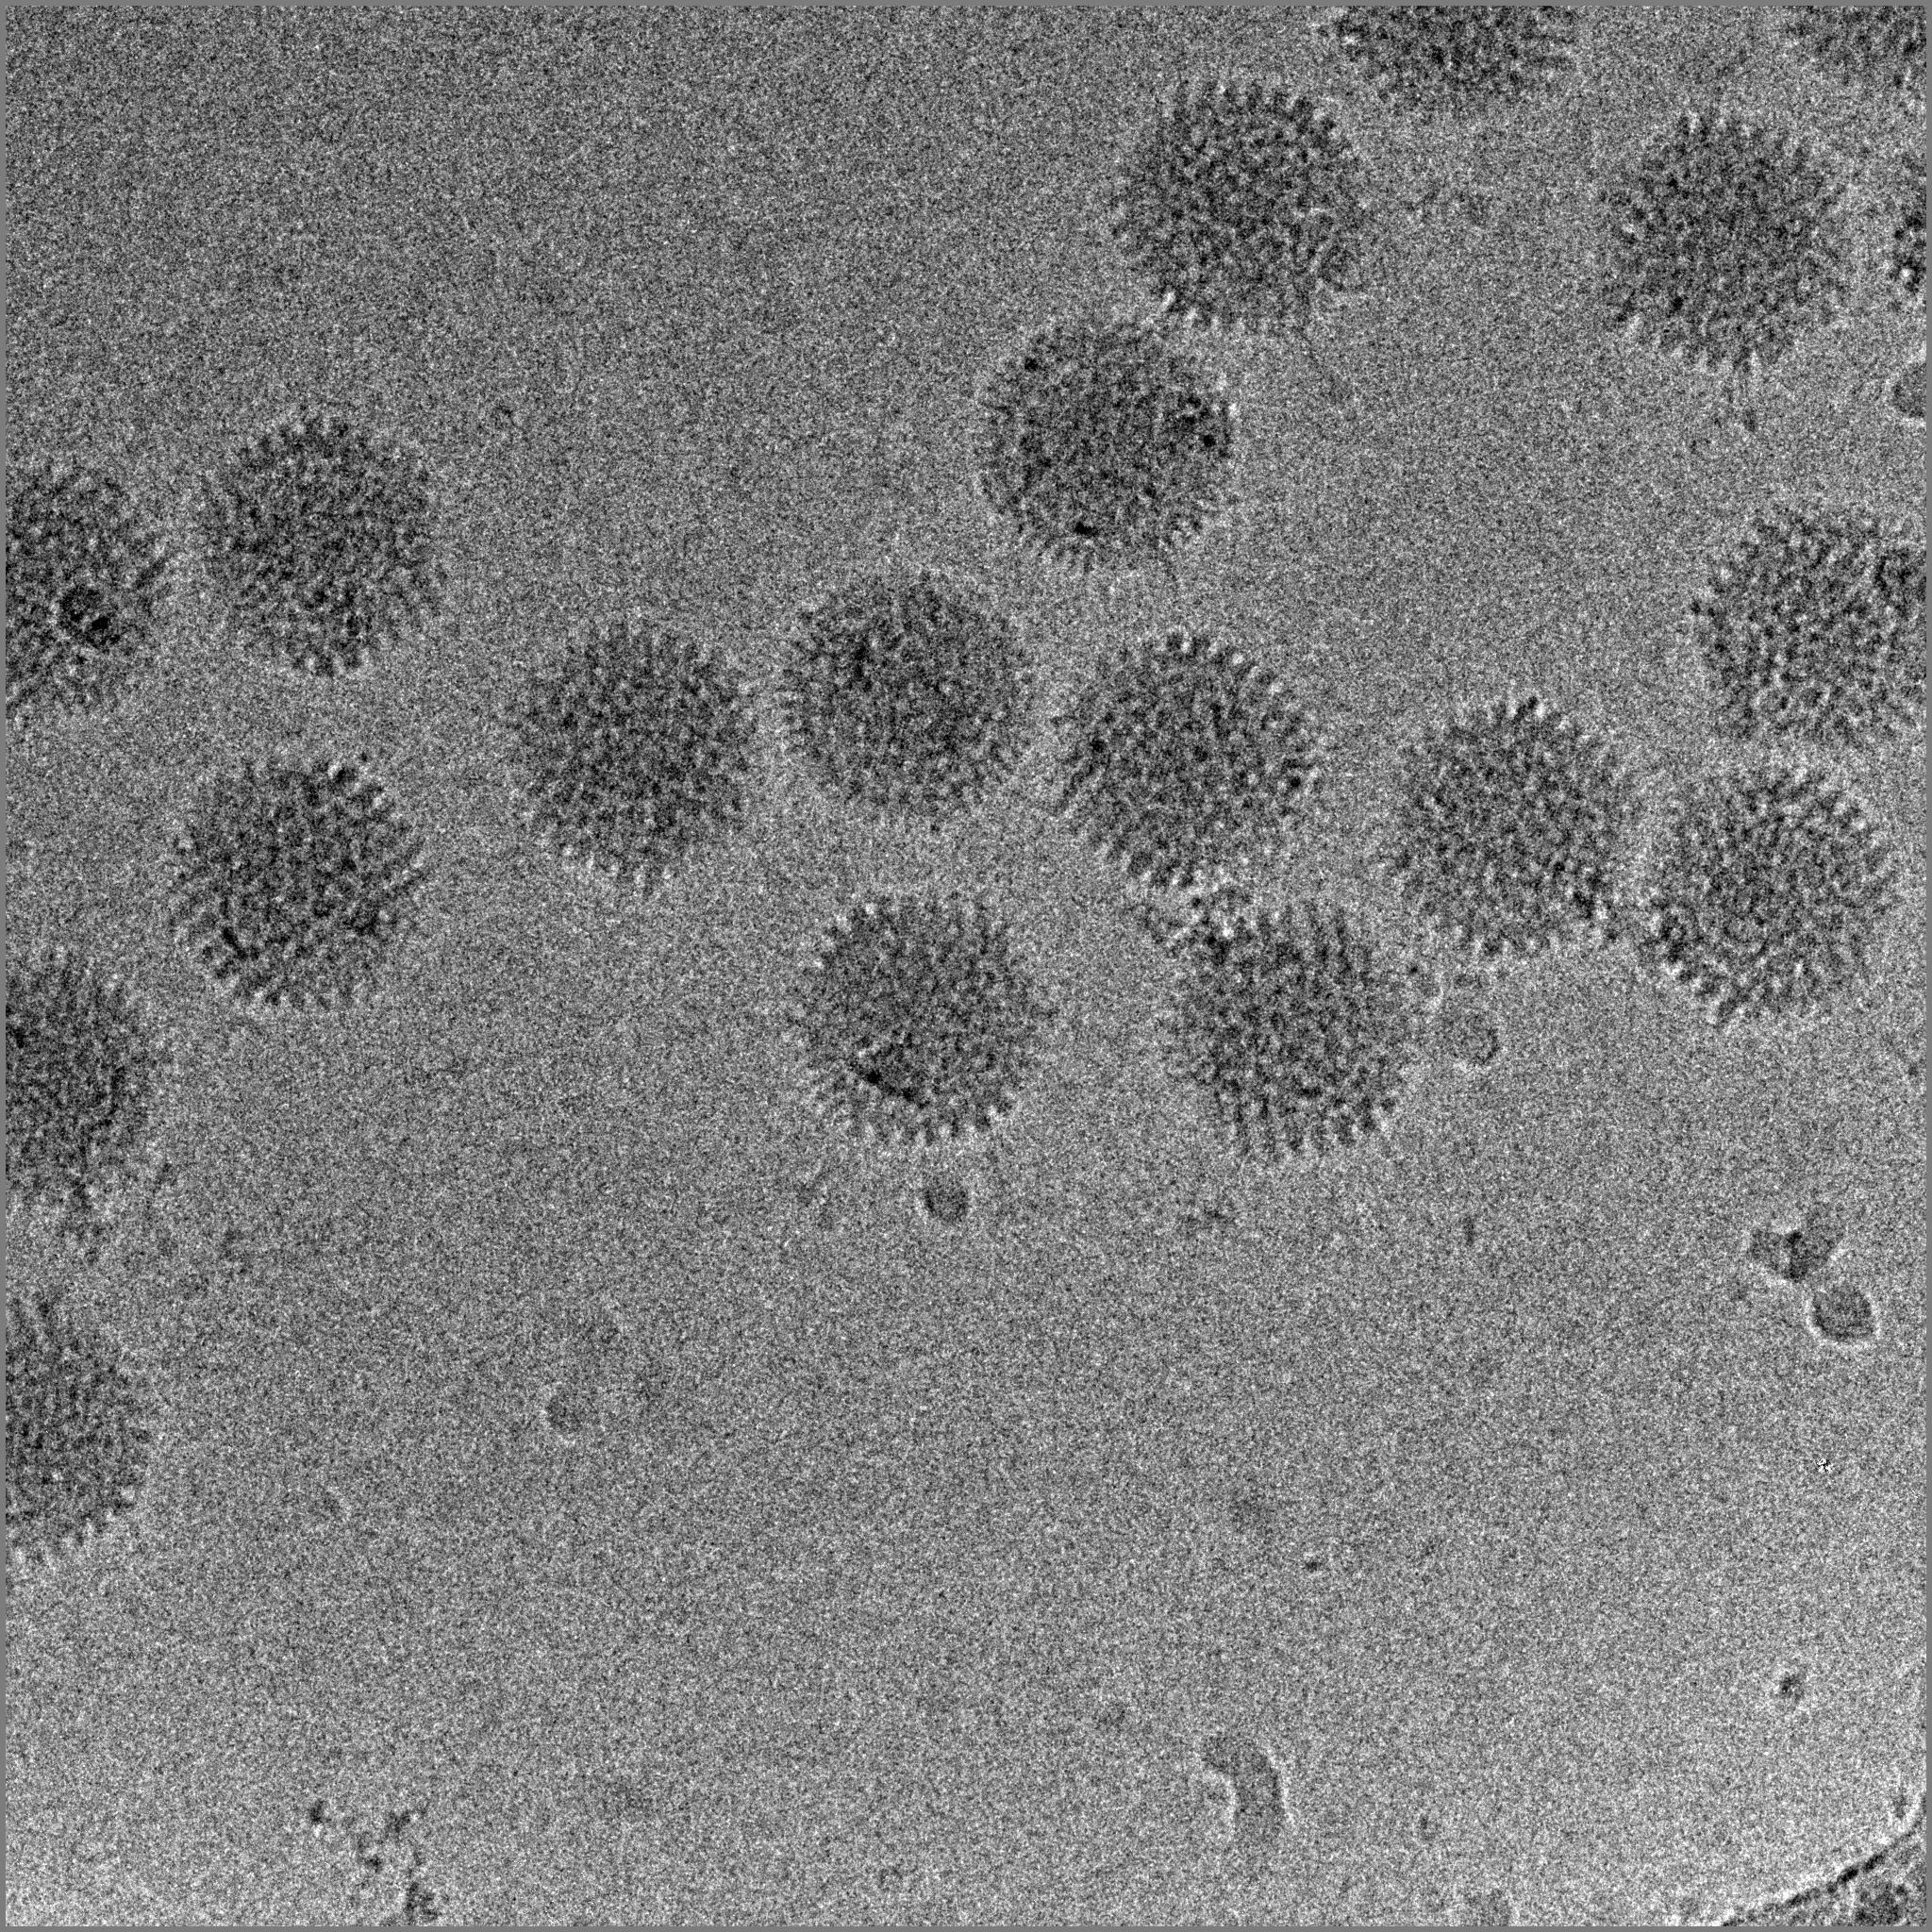 Фотографию вируса и названия. Вирус гриппа электронная микроскопия. Бактериофаг микроскопия. Вирус в электронном микроскопе. Вирионы вирусов под микроскопом.